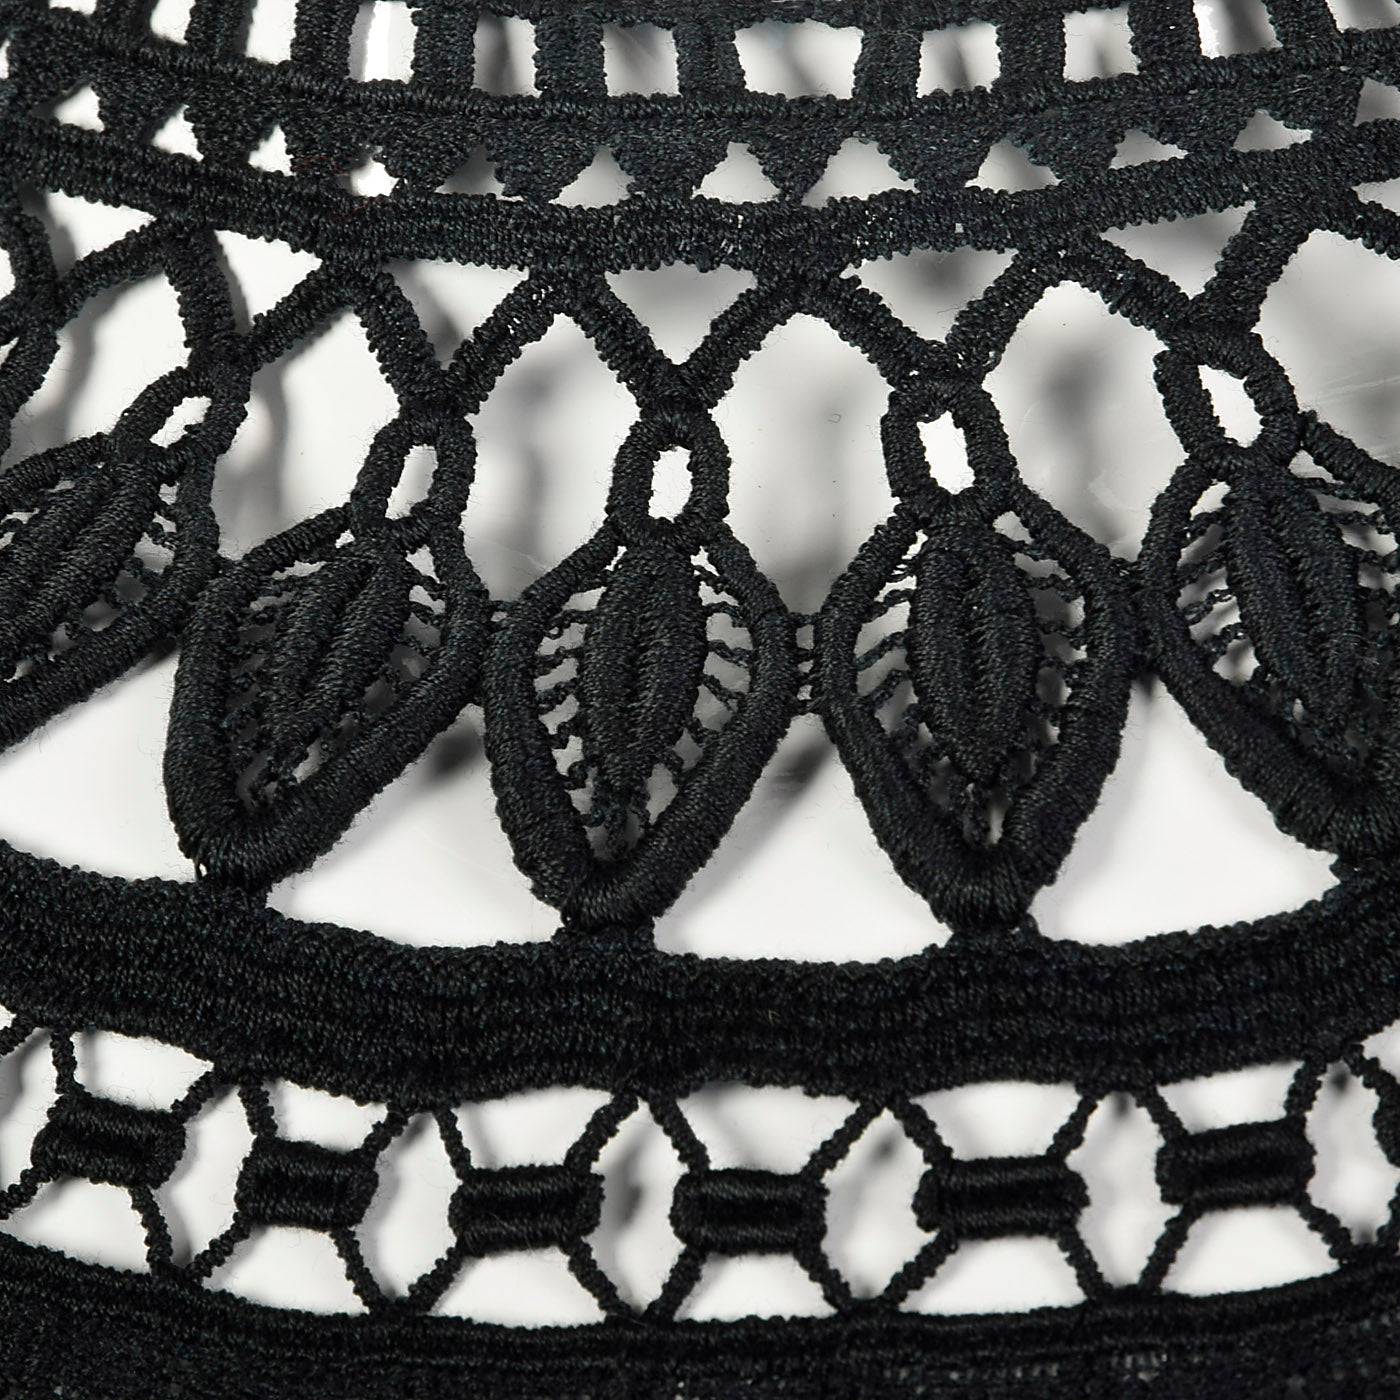 1950s Little Black Dress with Sheer Crochet Neckline